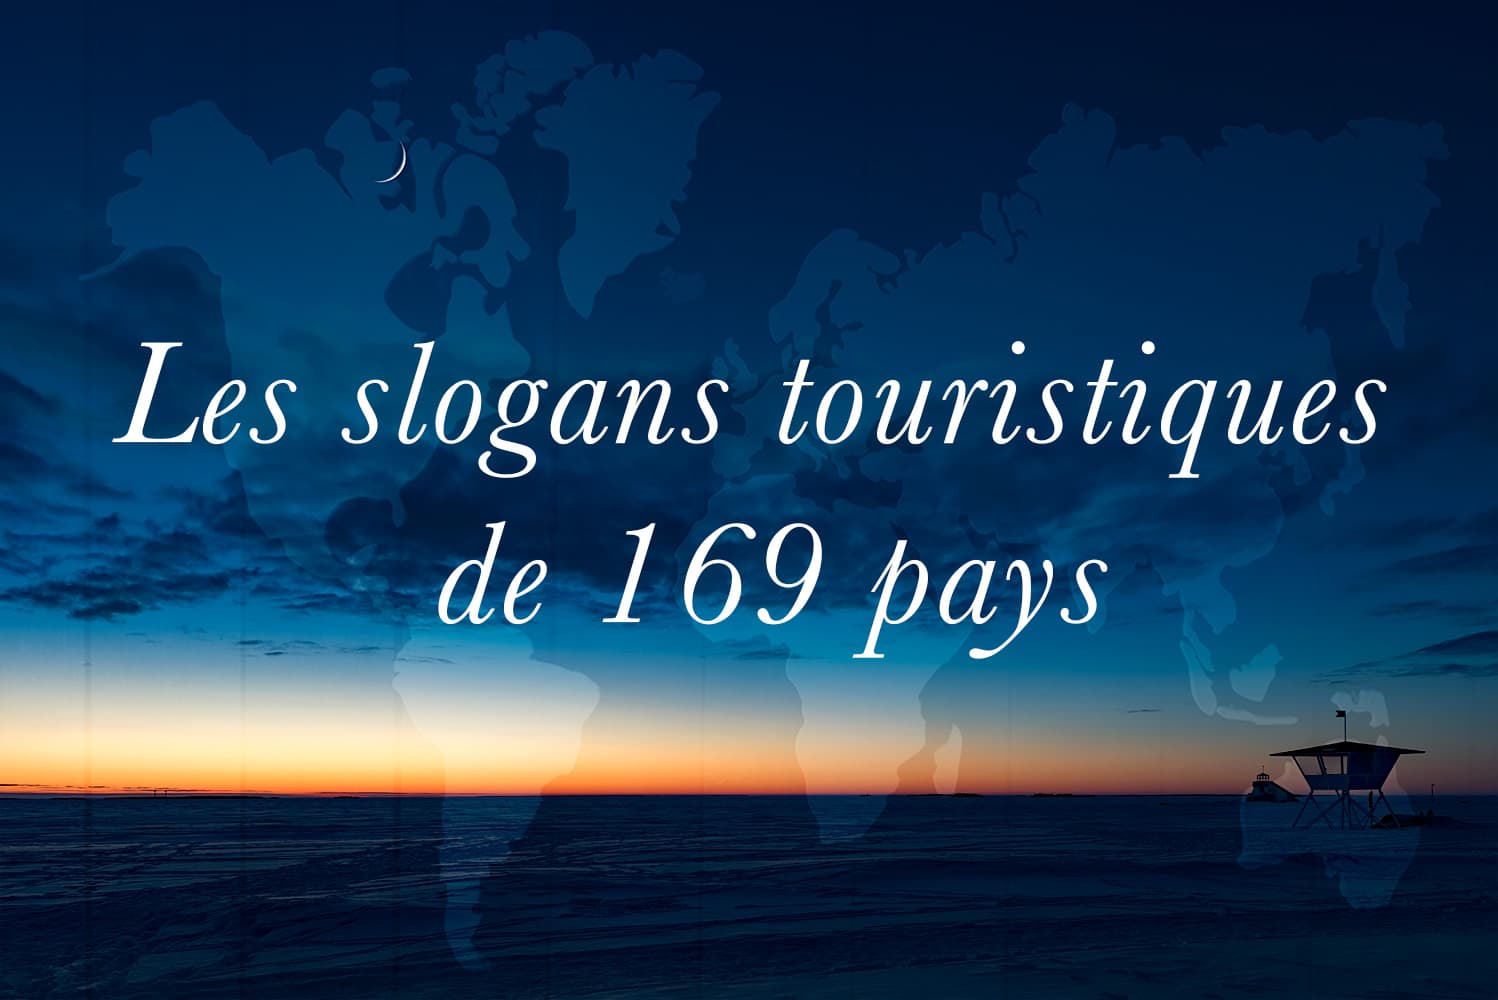 Les slogans touristiques de 169 pays